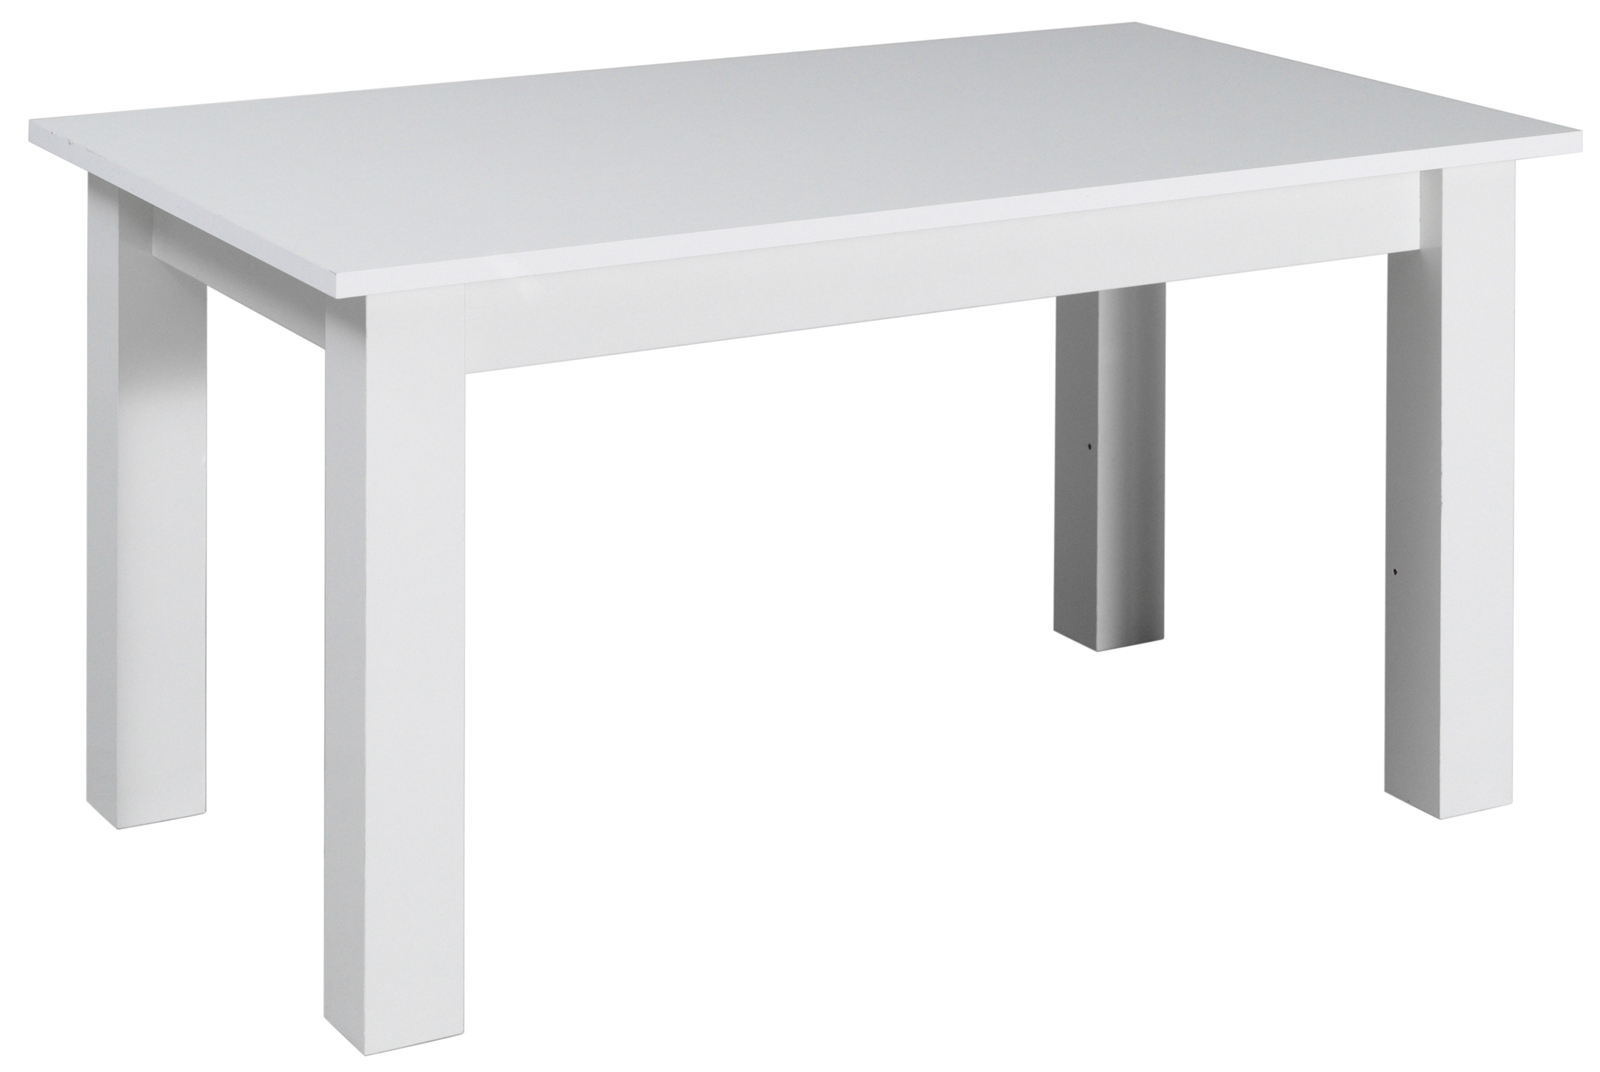 Konferenční stolek bílý T20 šířka 102 cm